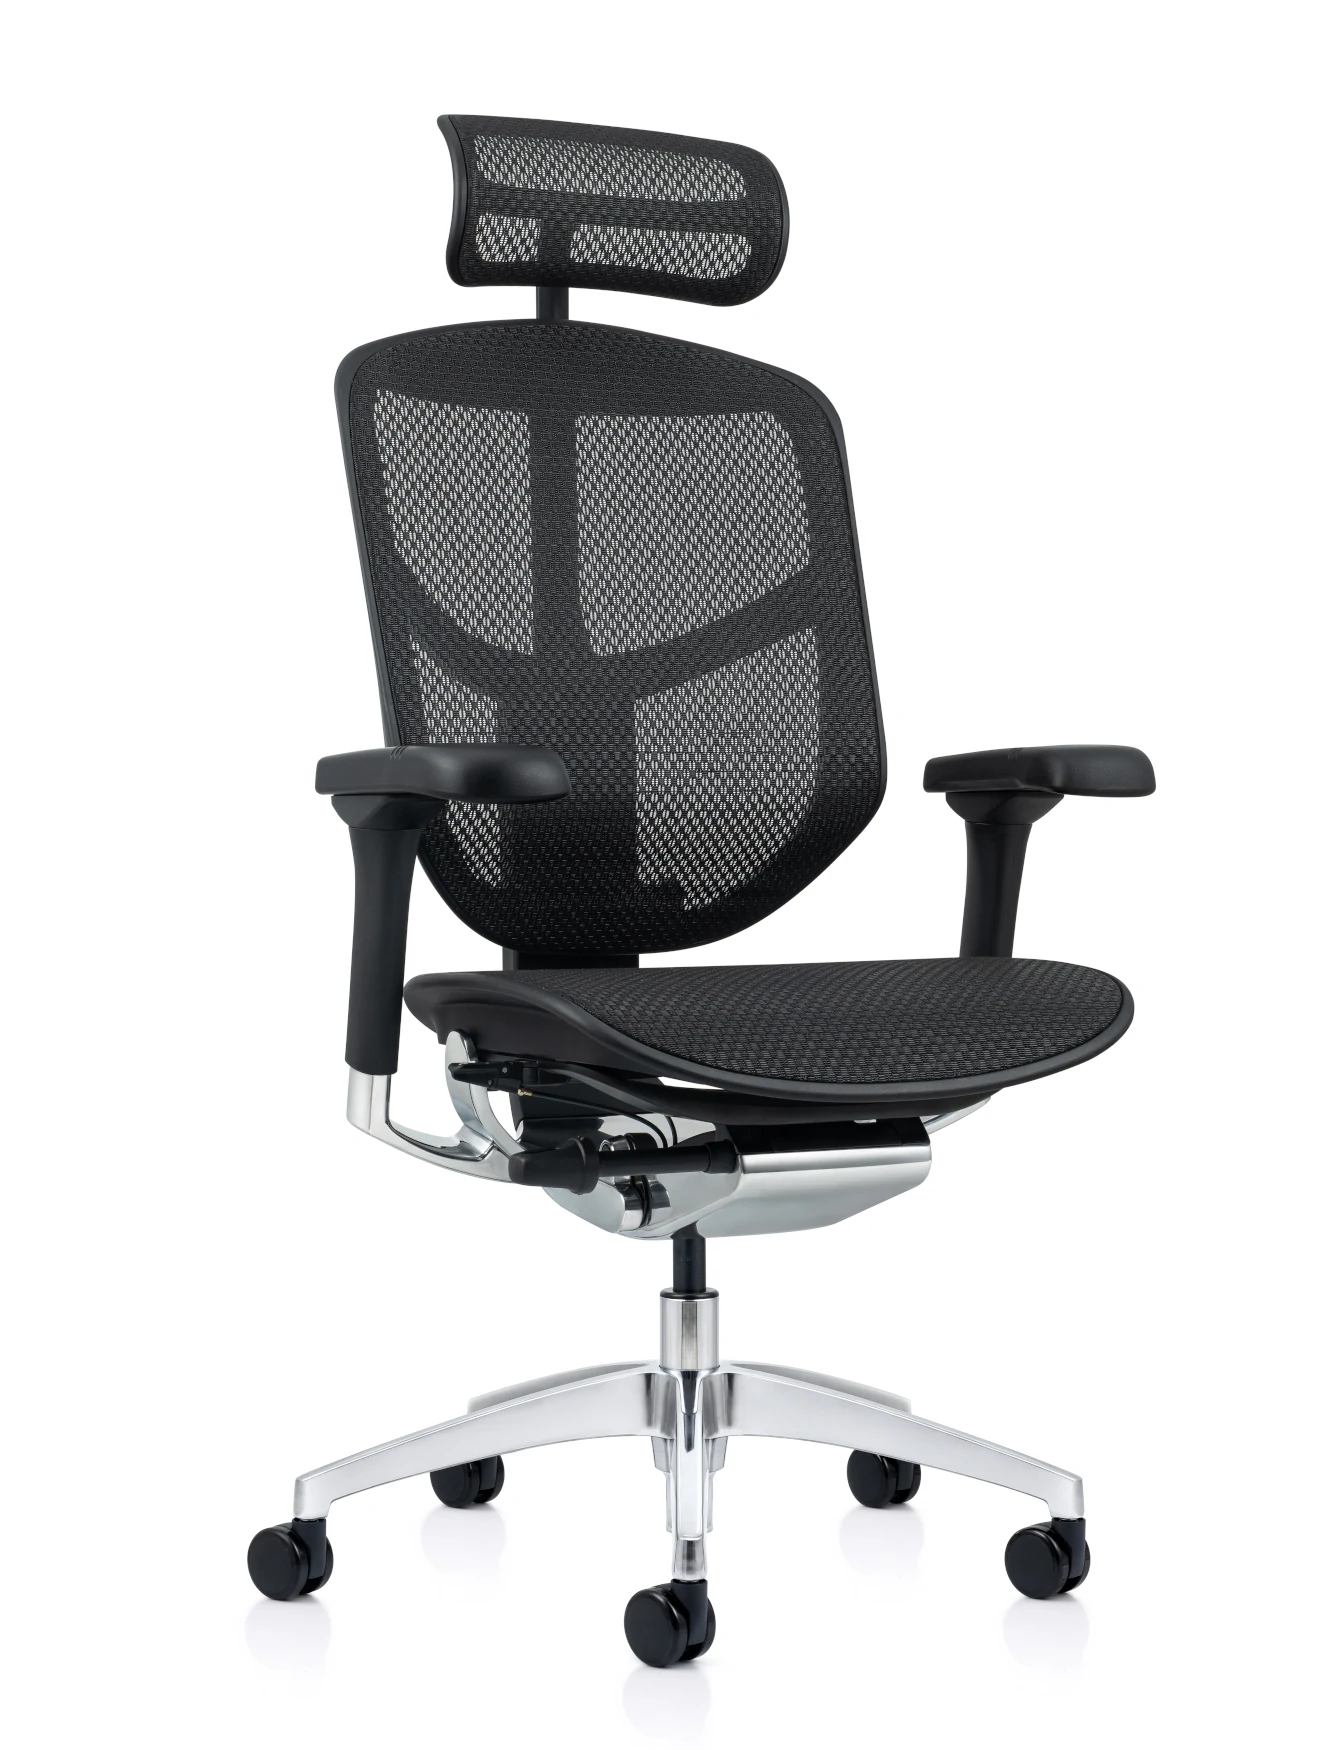 Enjoy Elite Mesh Office Chair - New Model G2